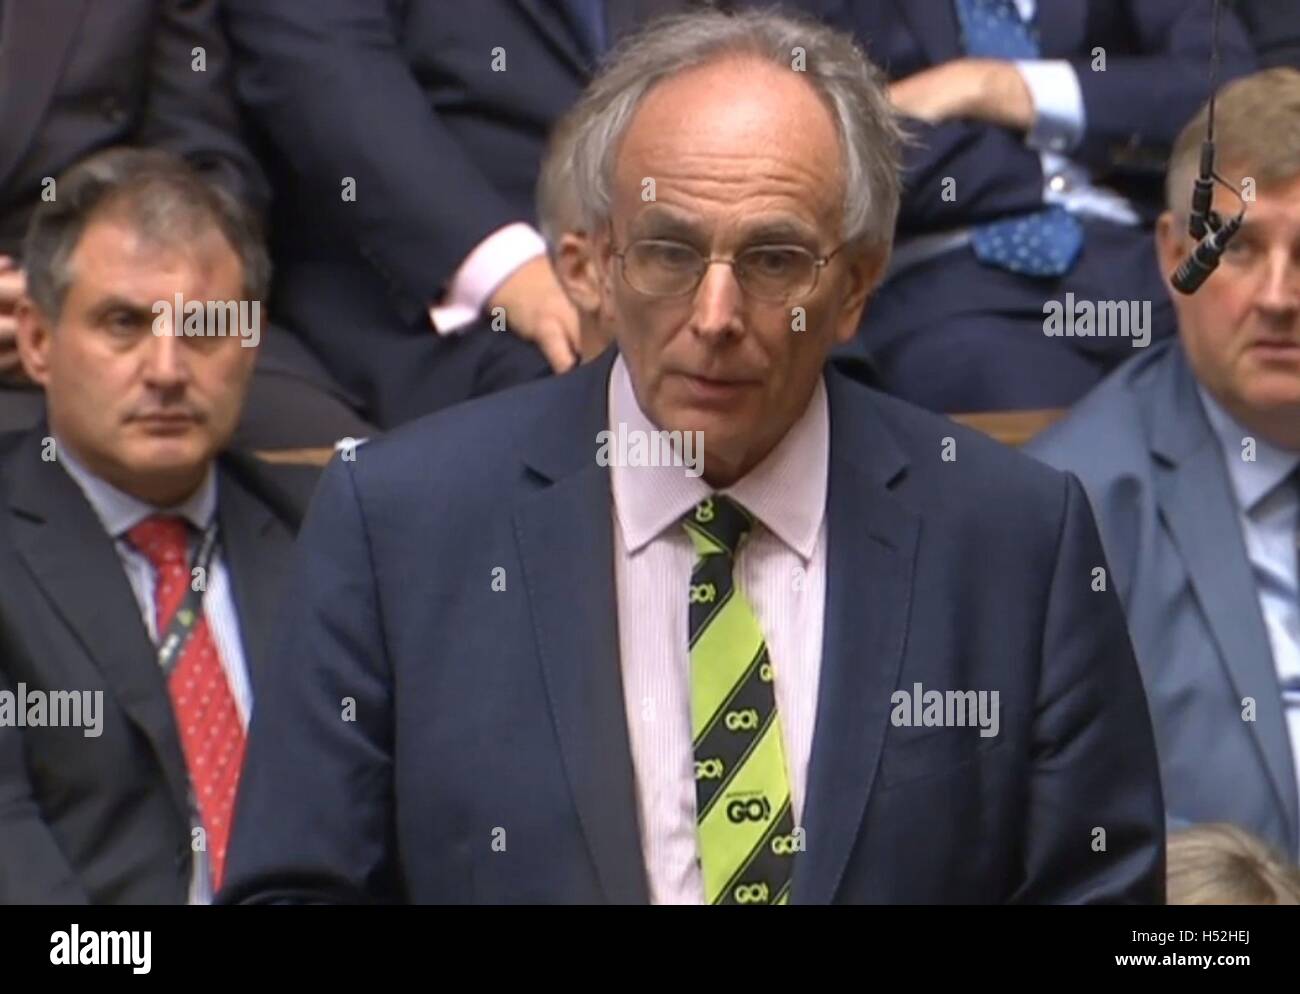 Peter Bone MP parle lors de questions au premier ministre à la Chambre des communes, Londres. Banque D'Images